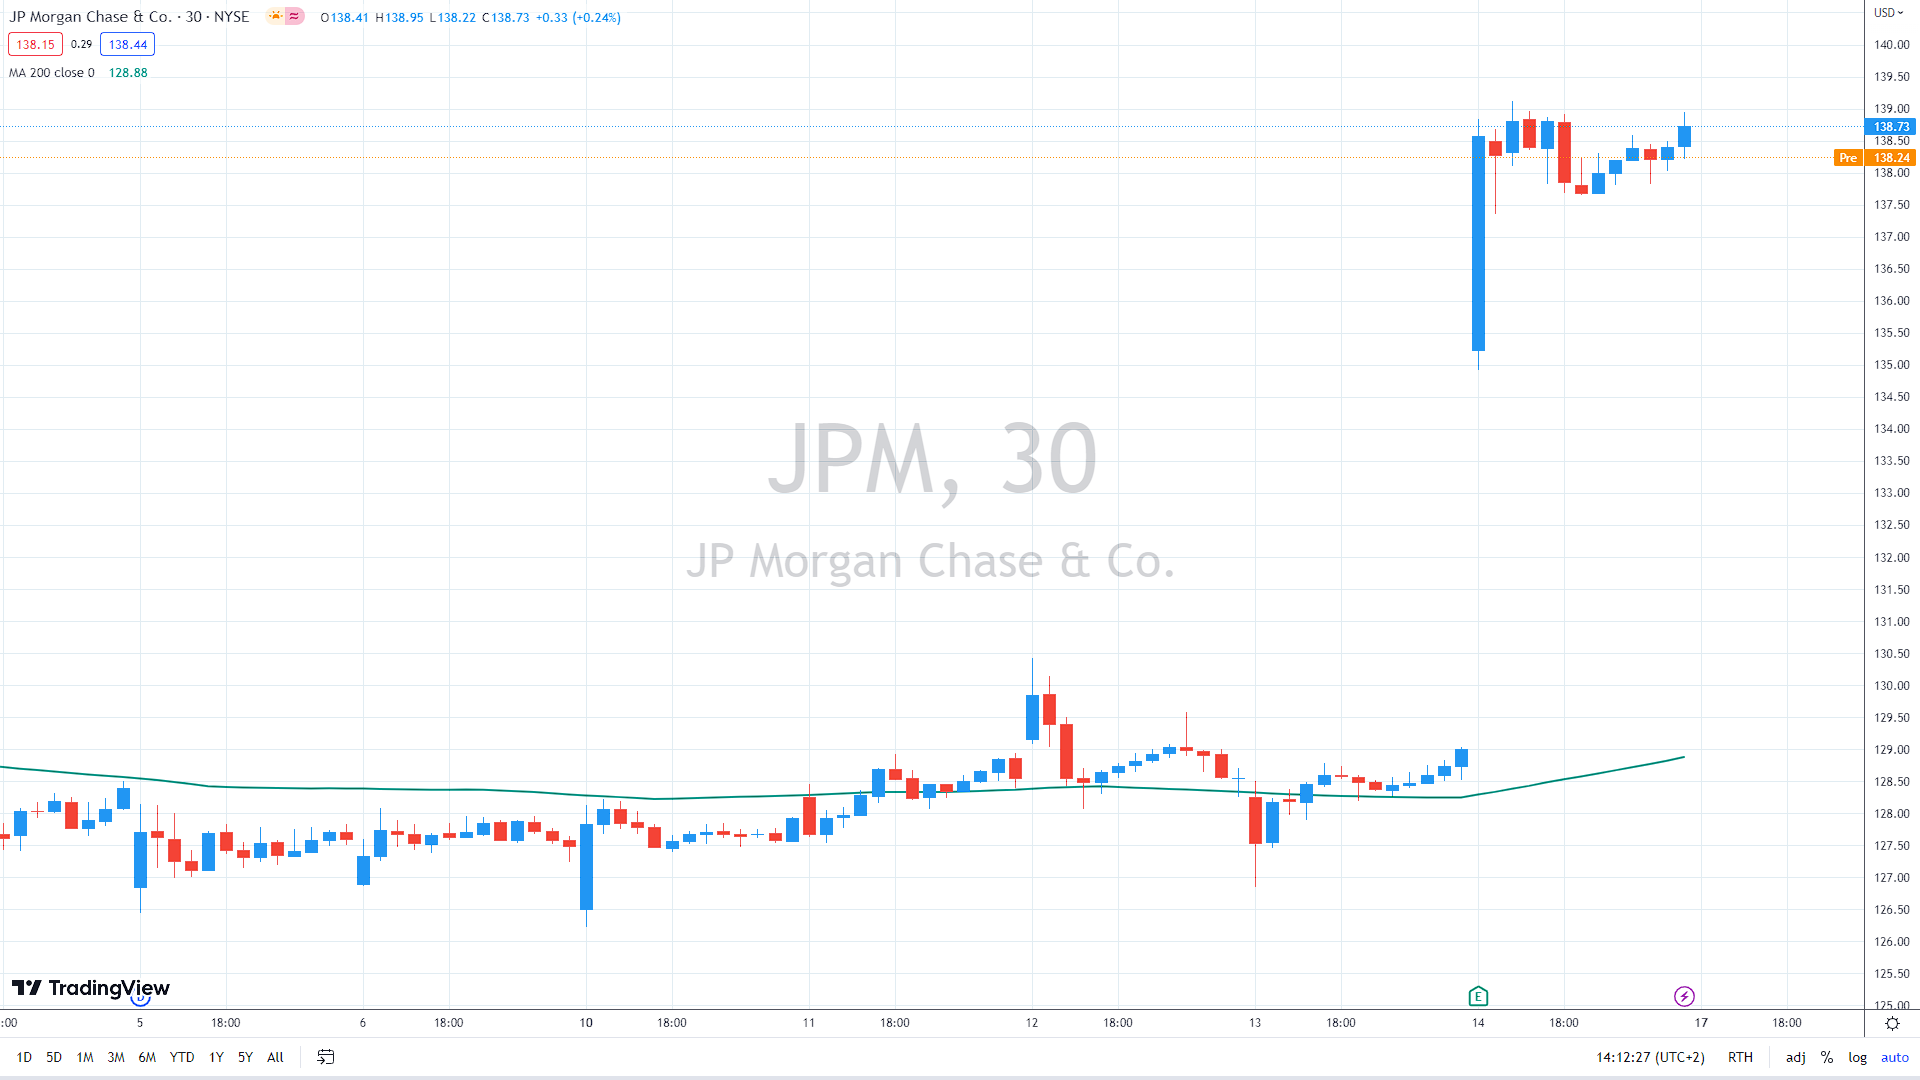 JPM 30m chart